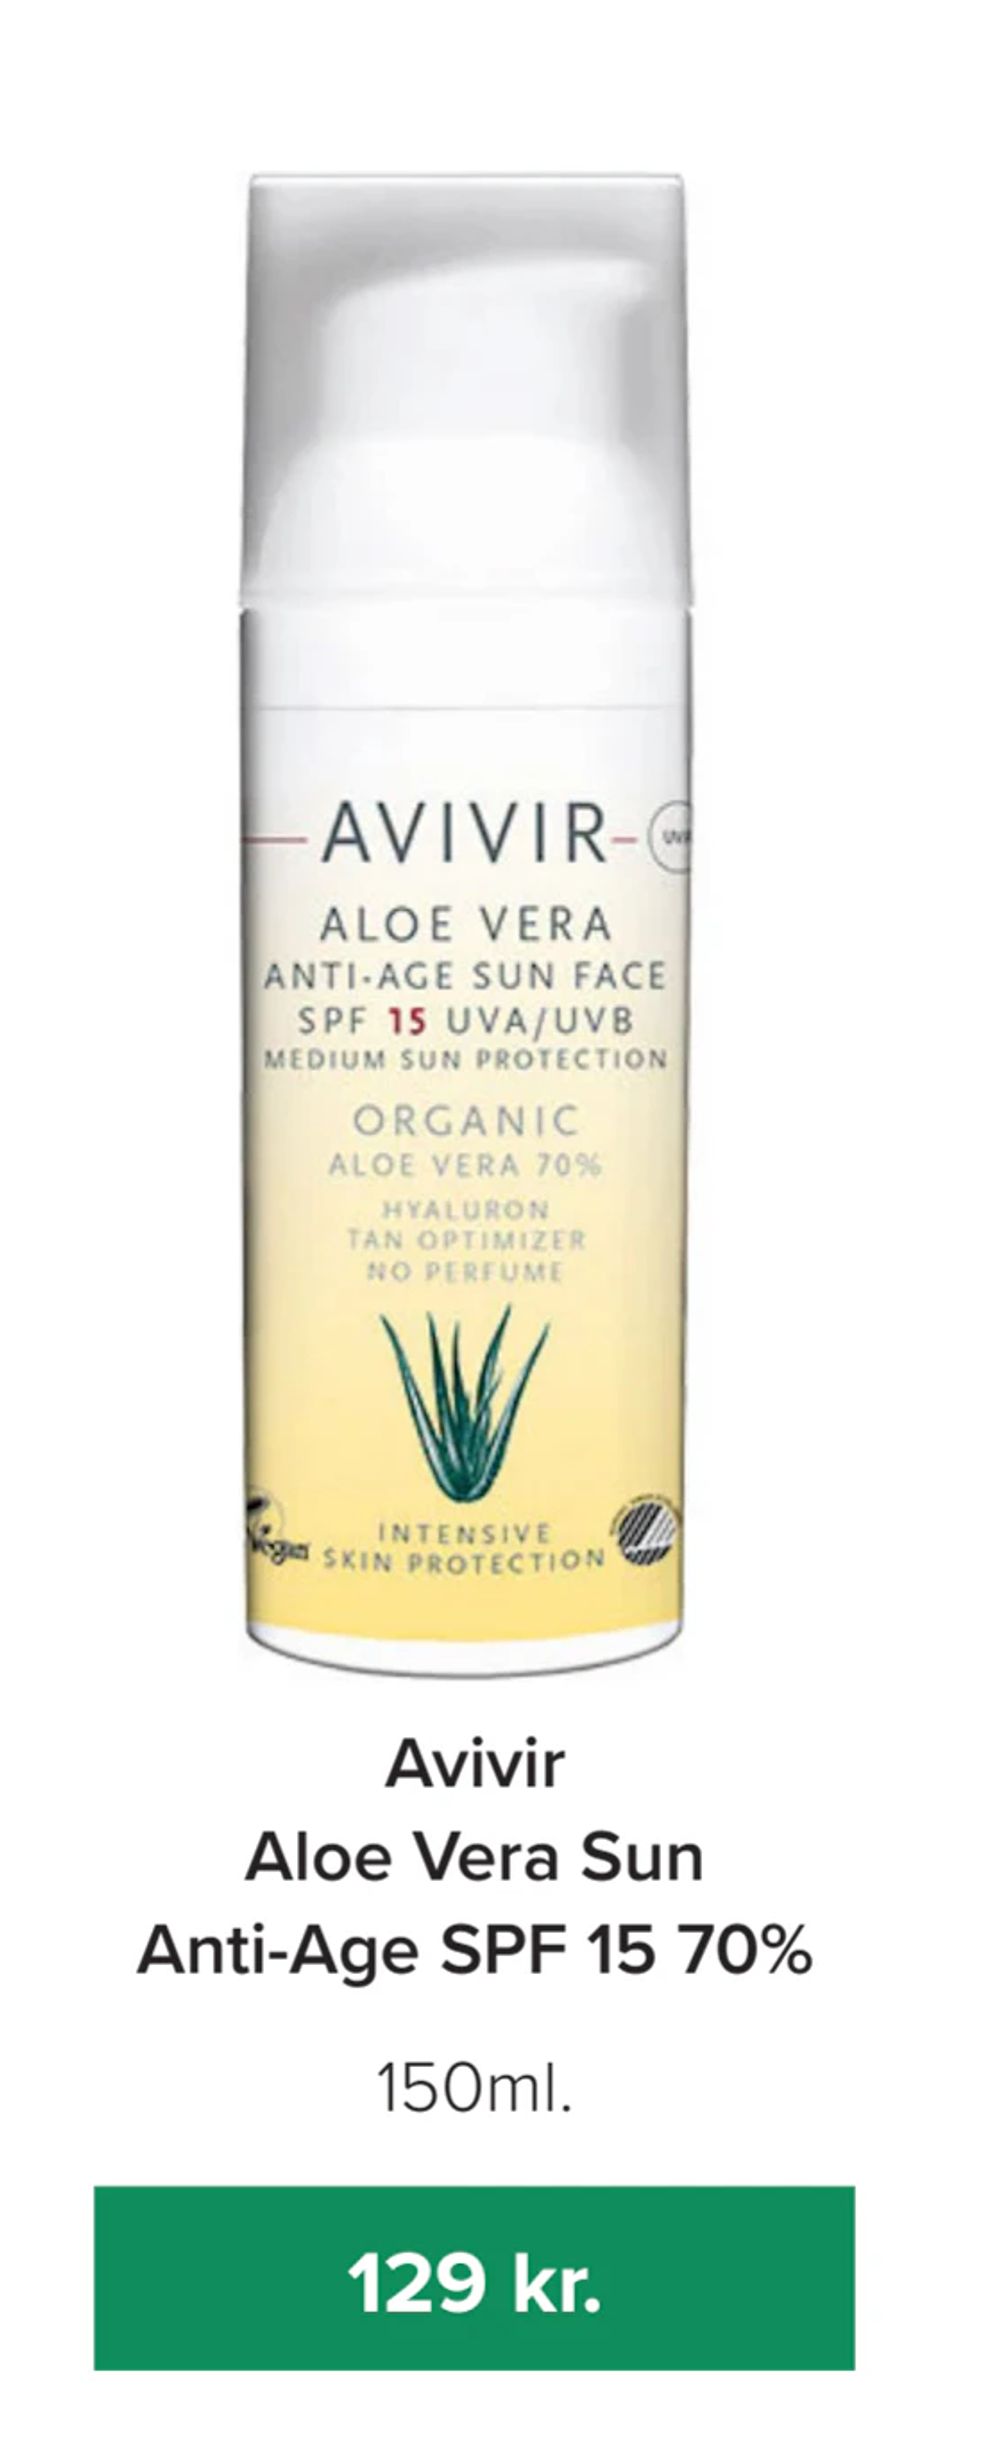 Tilbud på Avivir Aloe Vera Sun Anti-Age SPF 15 70% fra Helsemin til 129 kr.